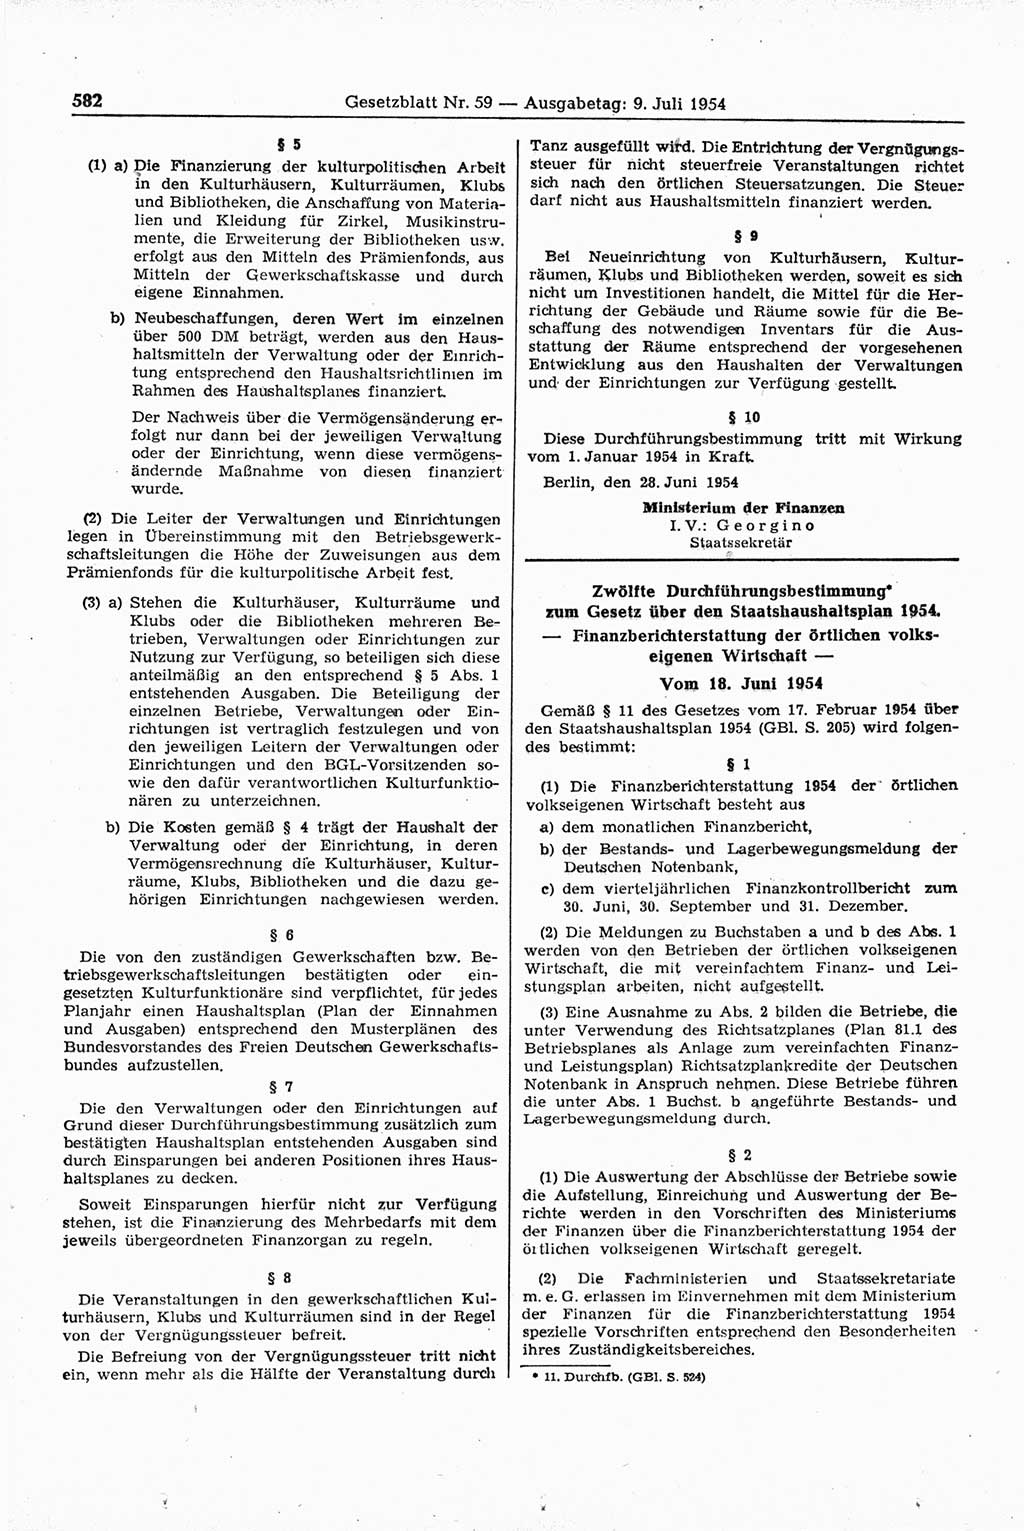 Gesetzblatt (GBl.) der Deutschen Demokratischen Republik (DDR) 1954, Seite 582 (GBl. DDR 1954, S. 582)